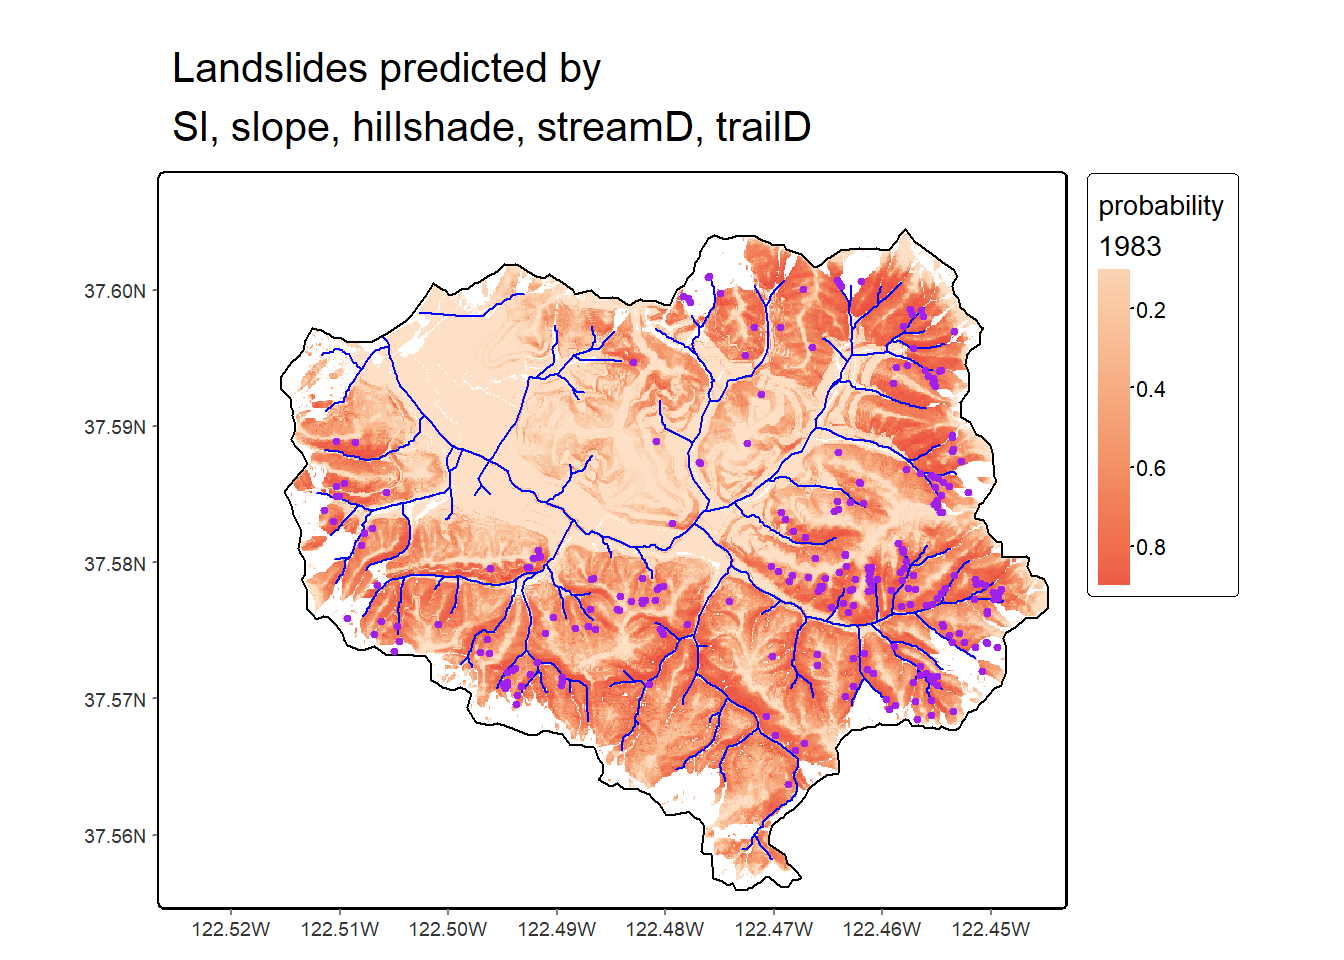 Logistic model prediction of 1983 landslide probability